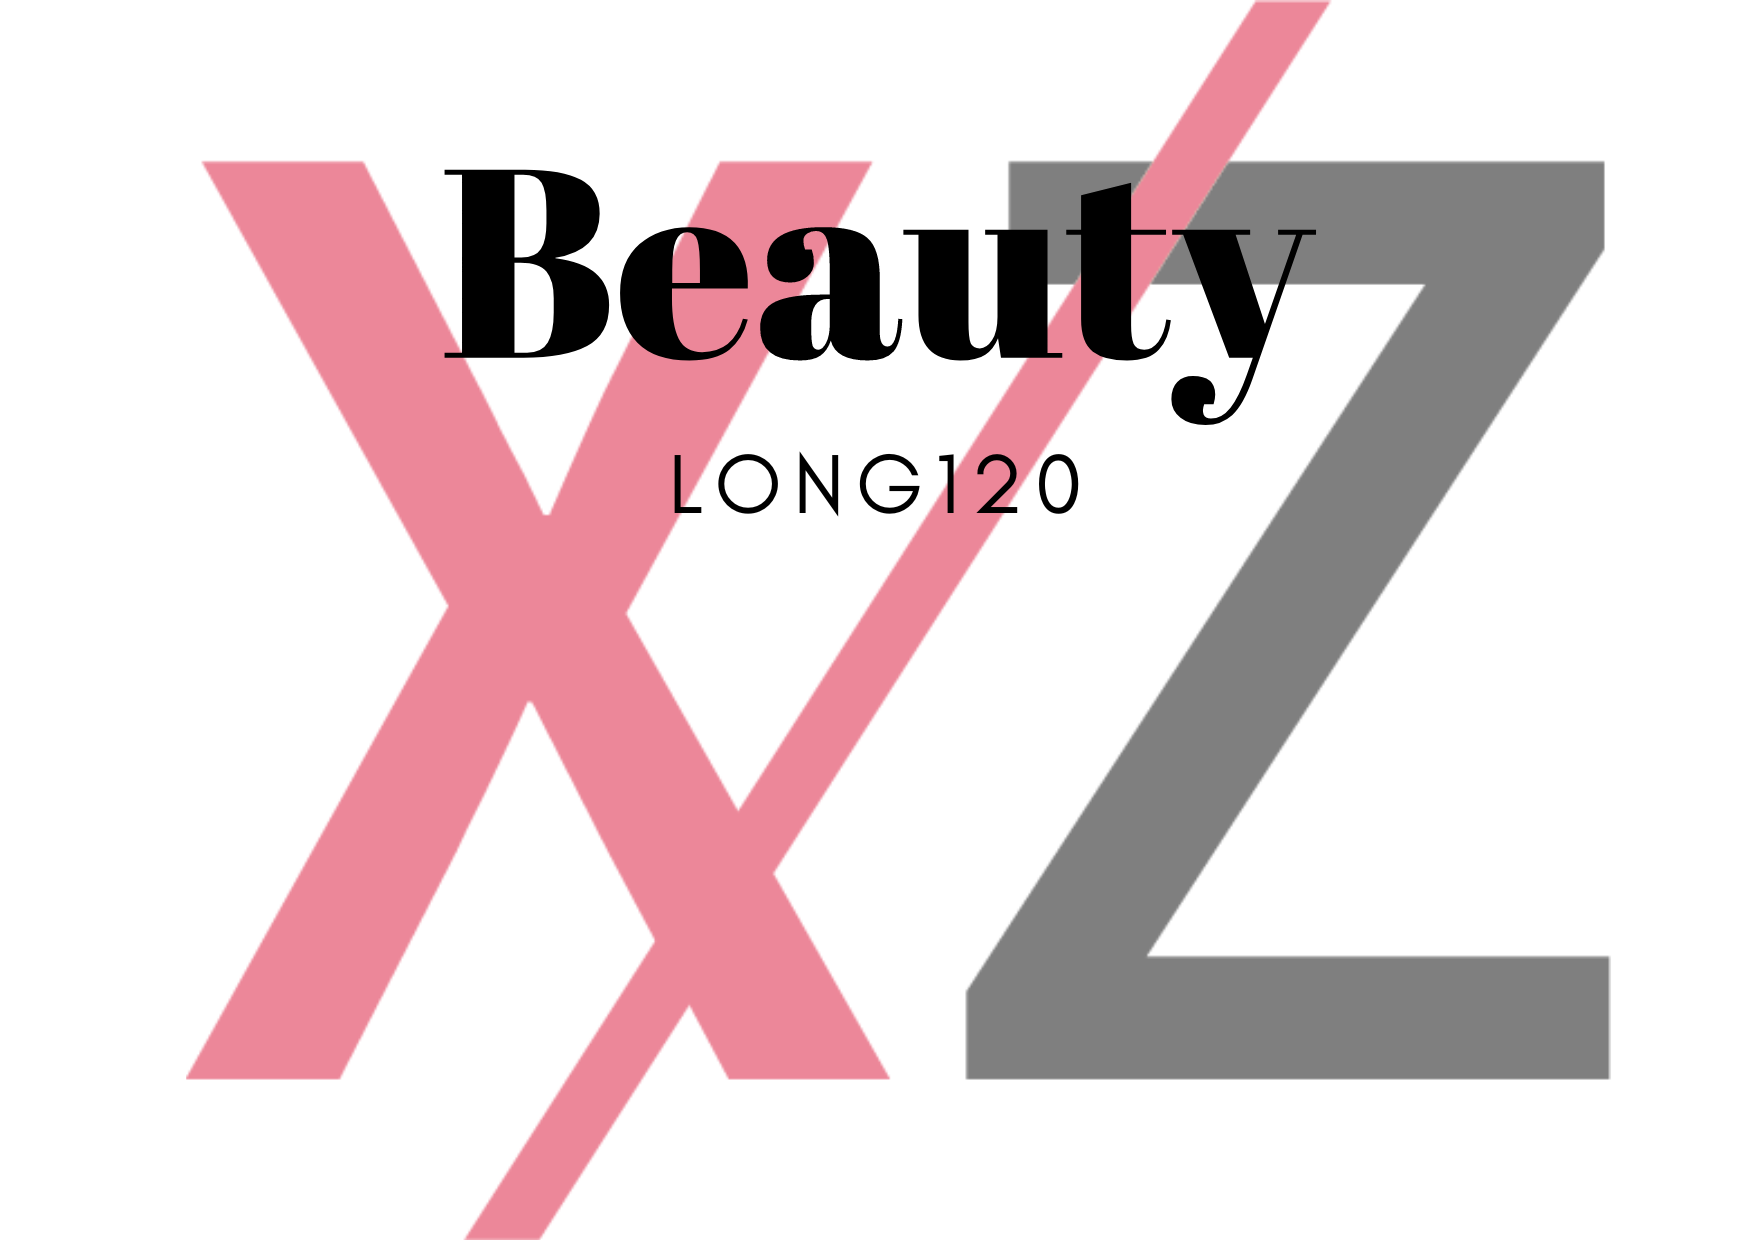 XZパーソナルジム&鍼灸ボディケア 〈Beauty〉ロングコース120分のメニュー画像